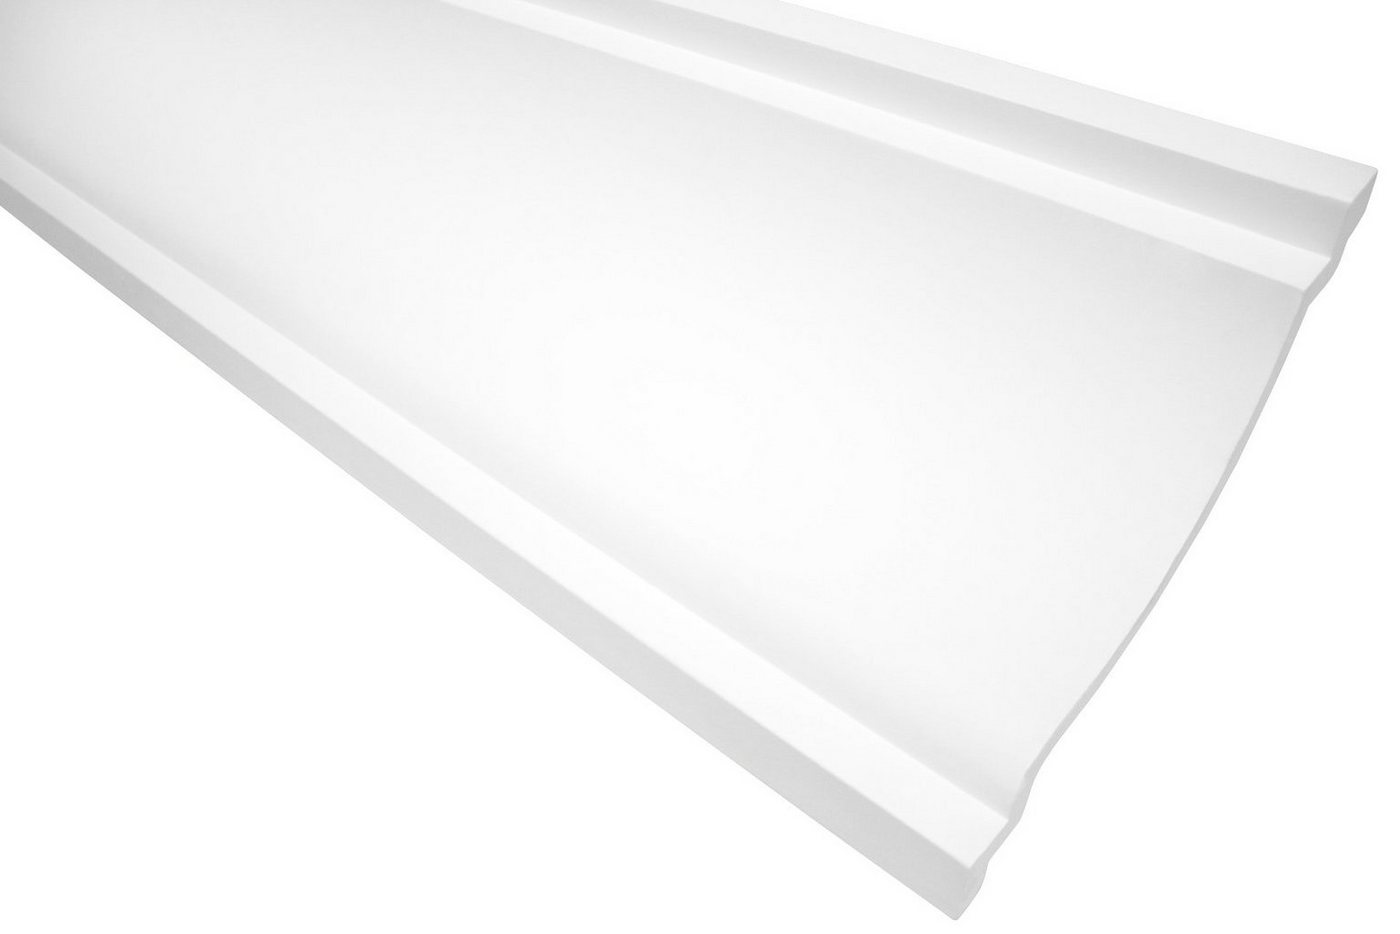 Hexim Stuckleiste P831, 10 Meter / 5 Leisten, Stuckleisten Decke modern, PU Hartschaum weiß - 2m Deckenleisten glatt Eckprofile Kranzleisten Deckenzierleisten (10 Meter) von Hexim